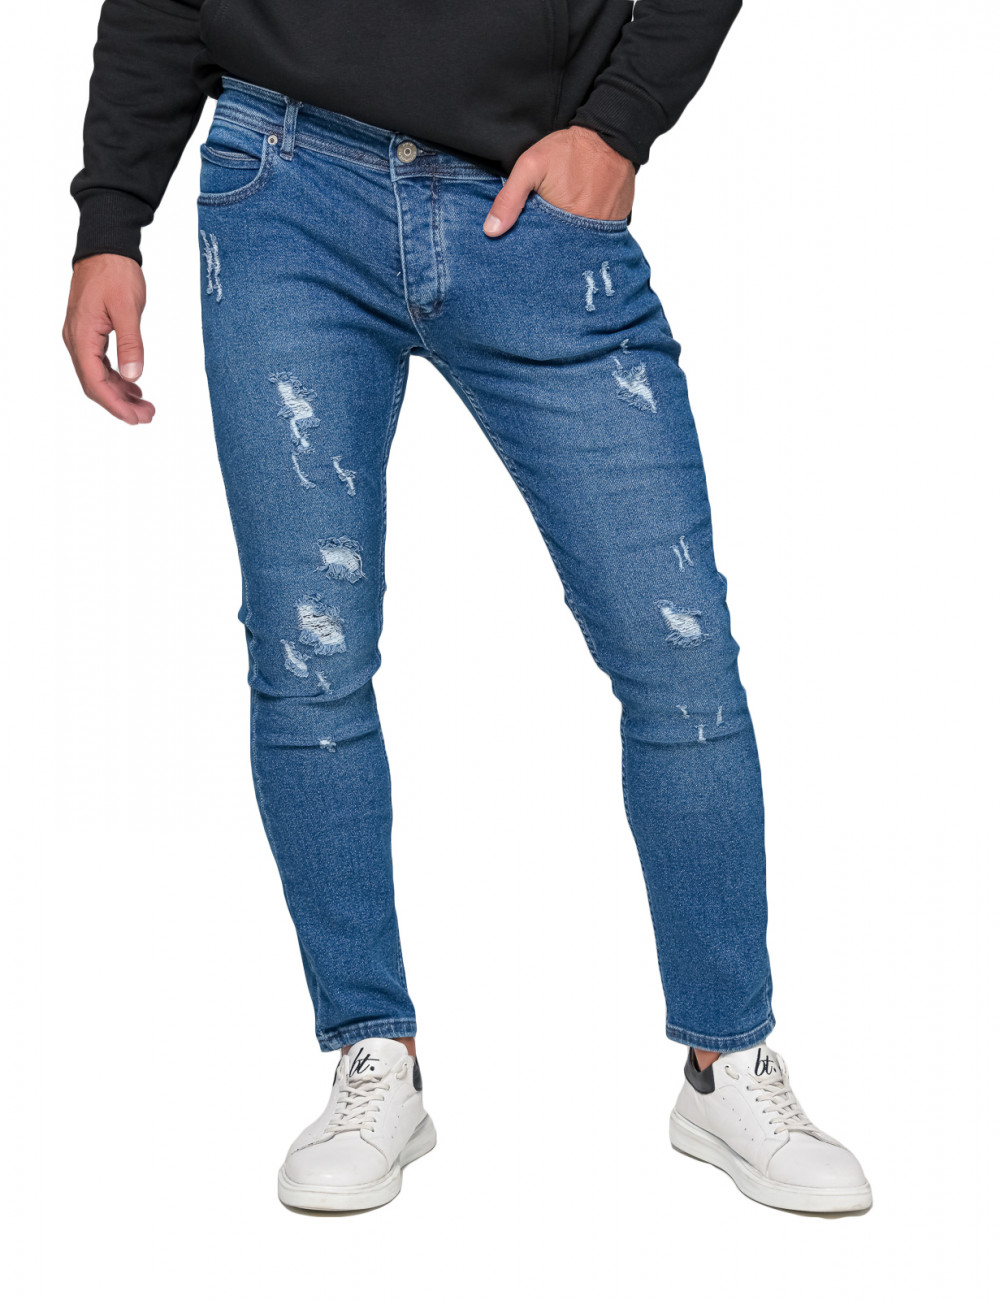 Ανδρικό μπλε τζιν παντελόνι με φθορές DR4082